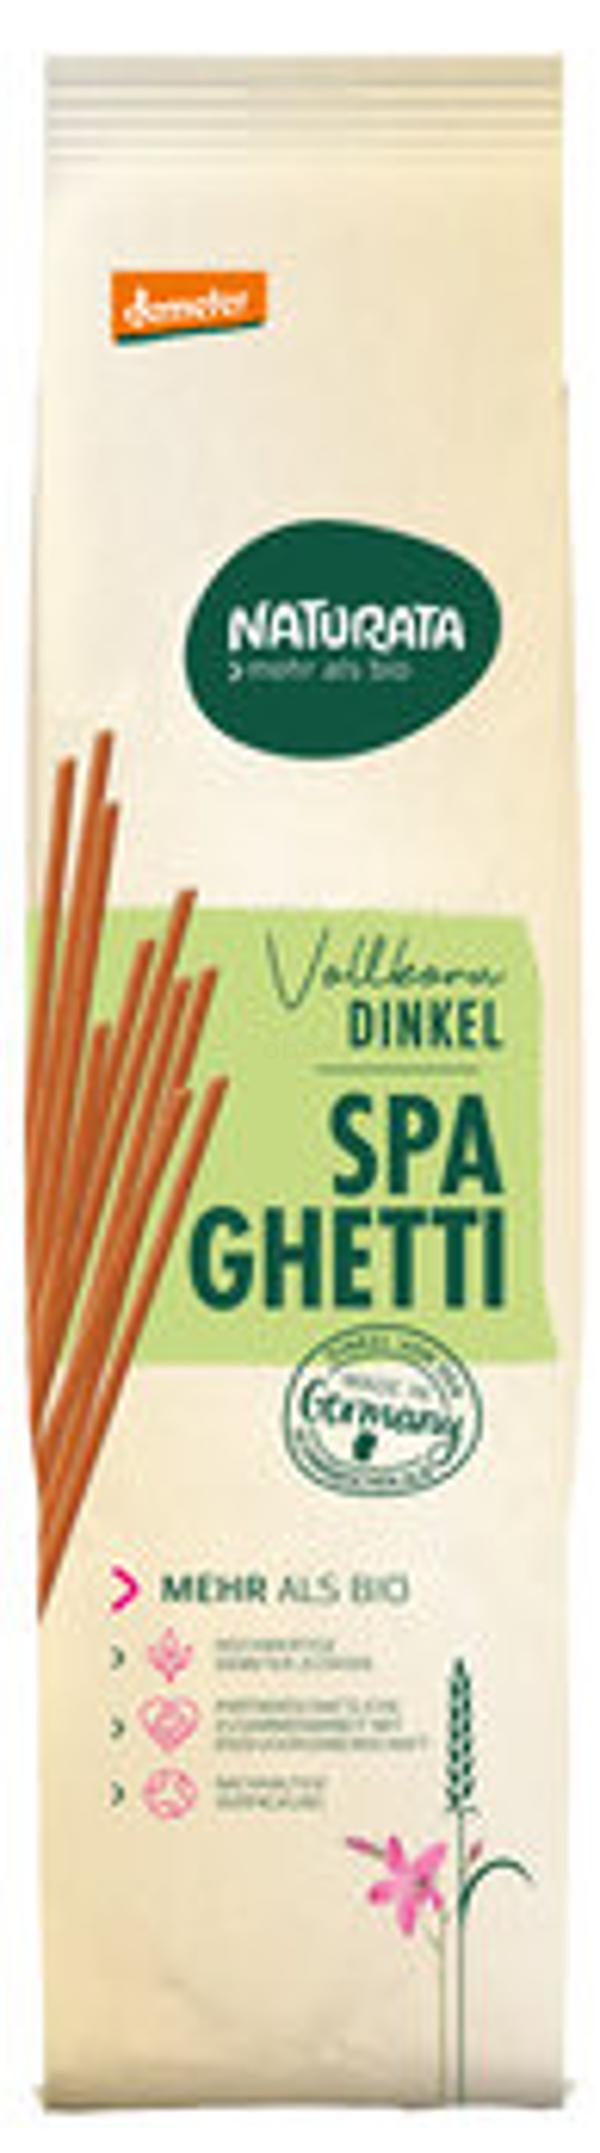 Produktfoto zu Dinkel-Vollkorn-Spaghetti 500g